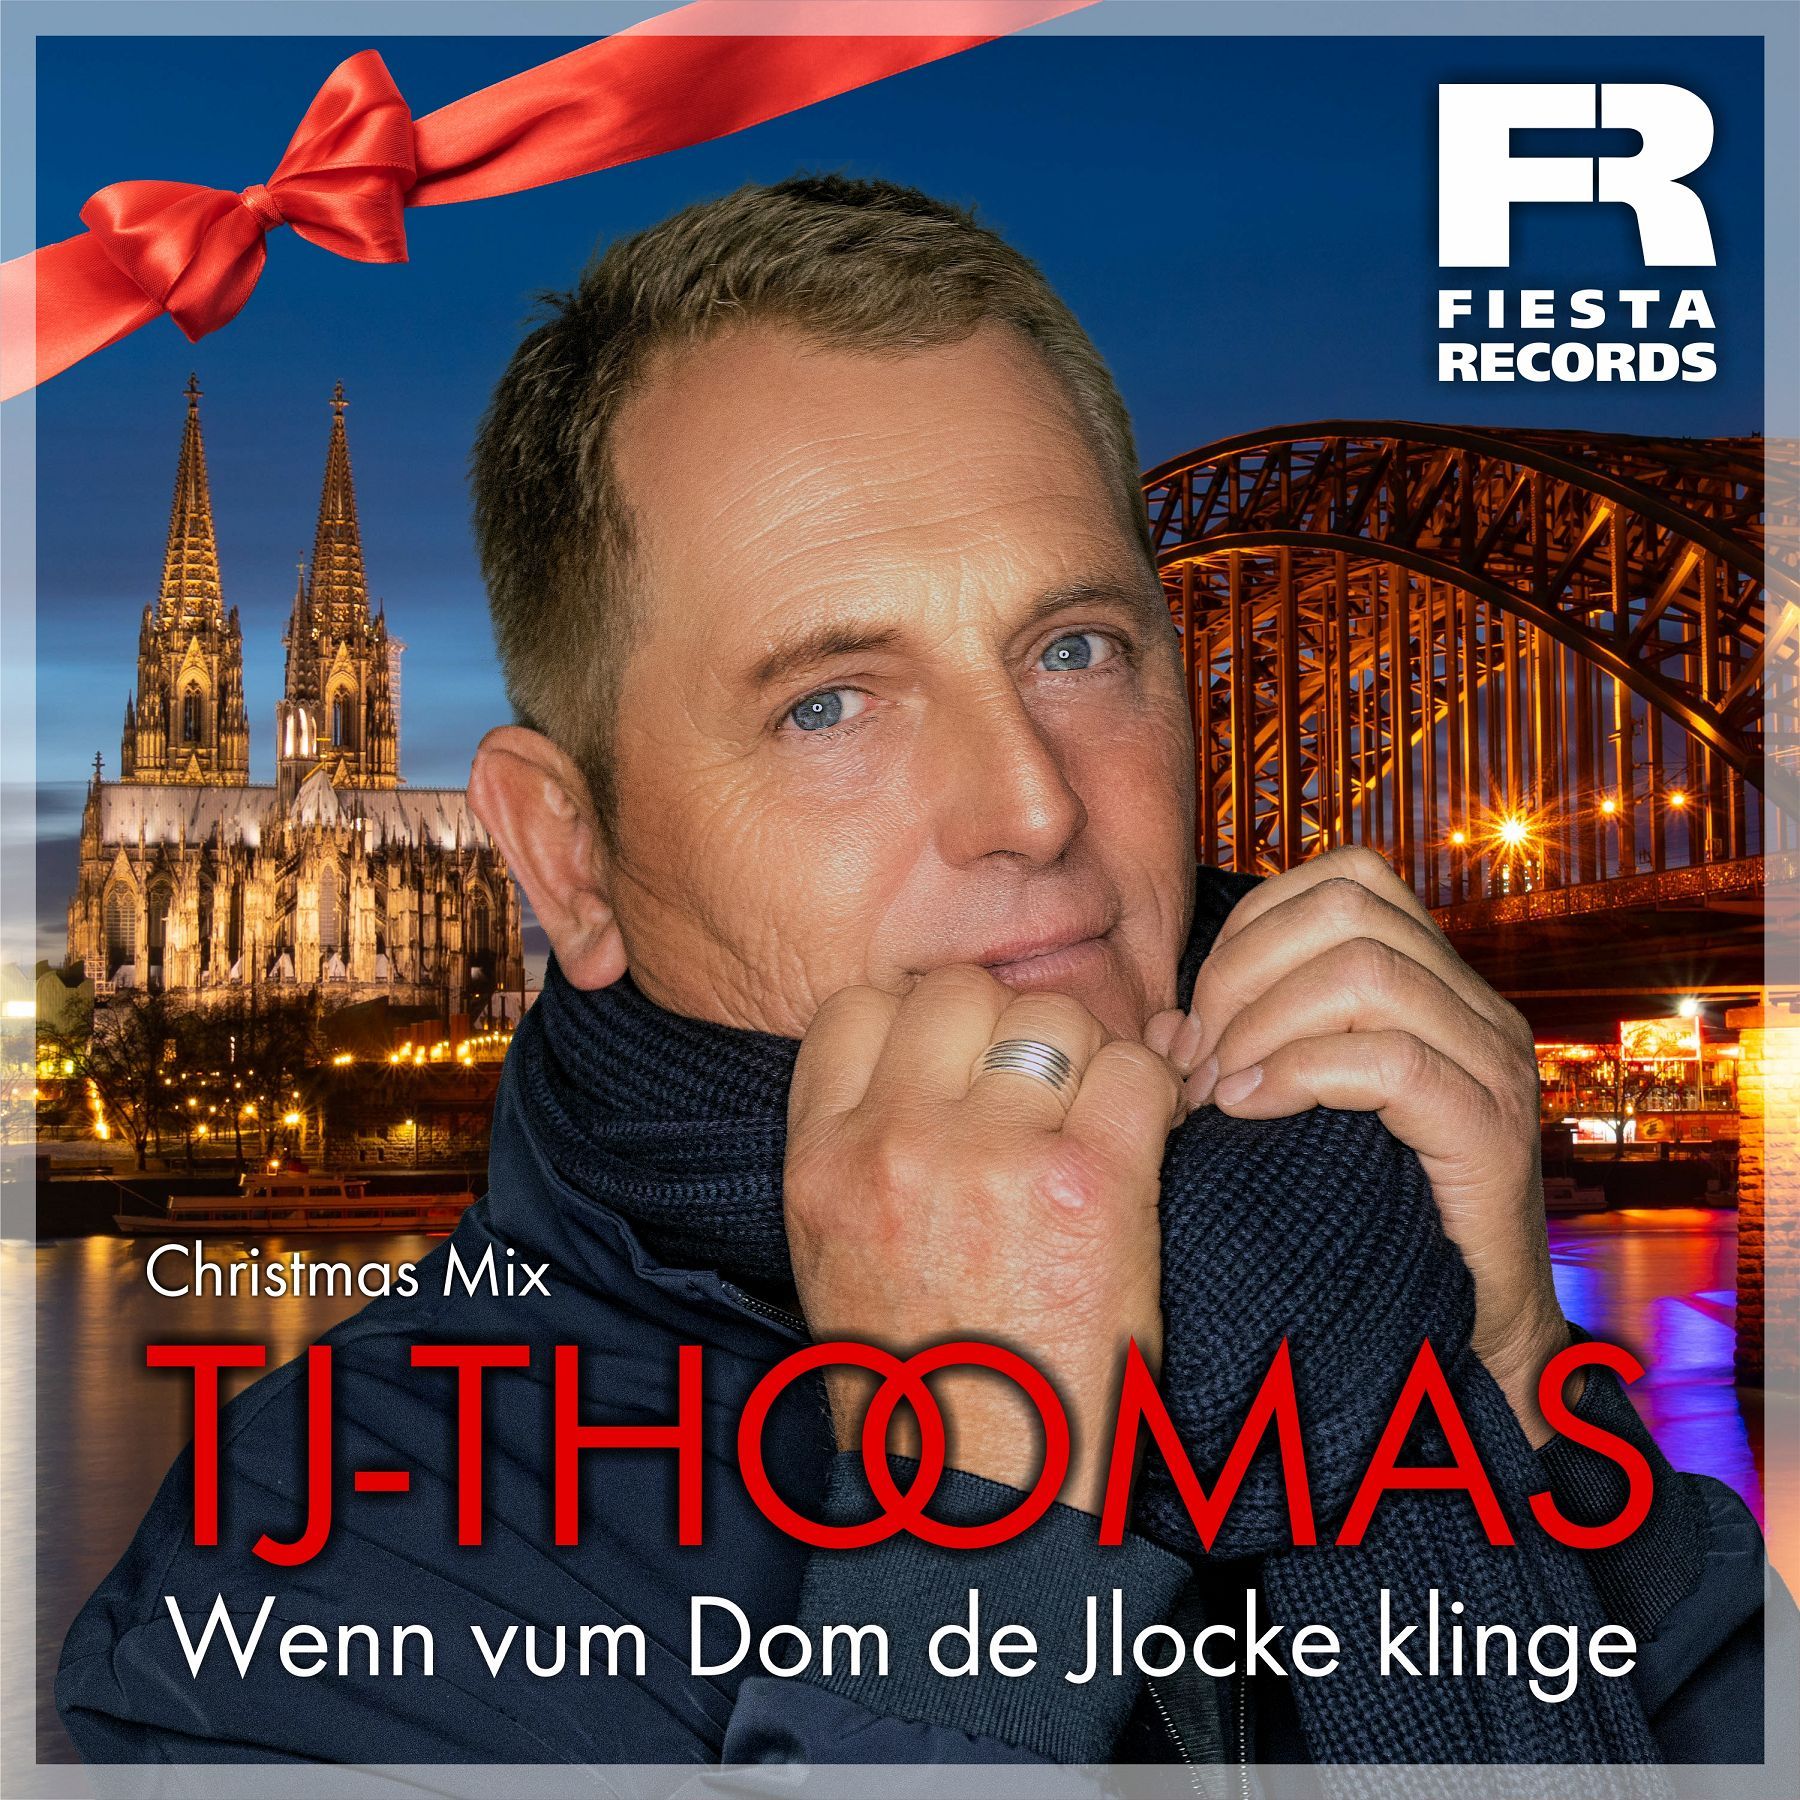 TJ-Thomas – Wenn vum Dom de Jlocke klinge (Christmas Mix)